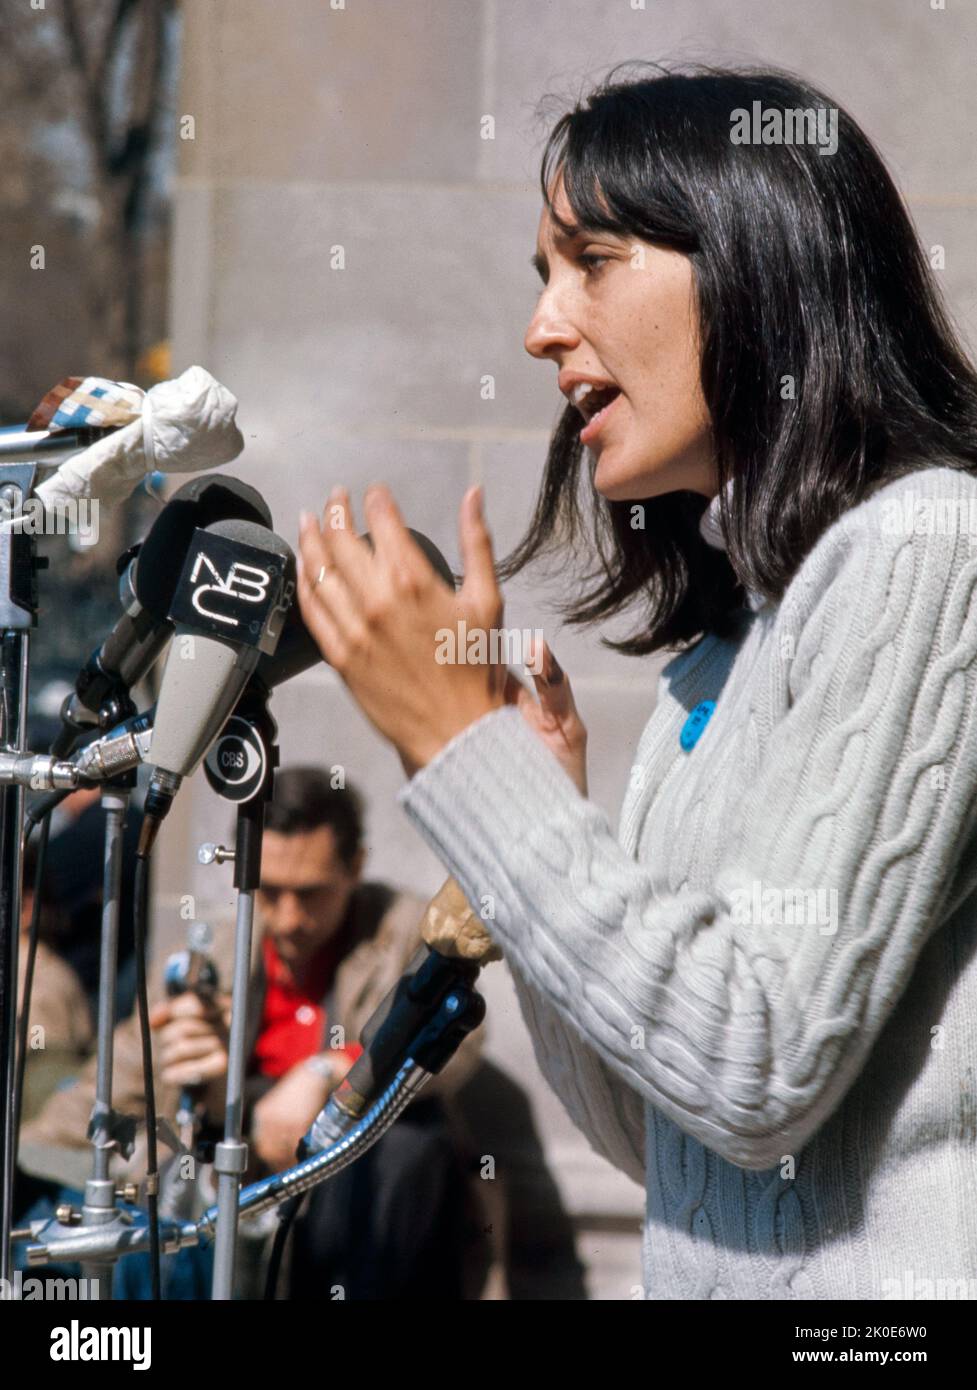 Joan Baez (geboren 1941), amerikanische Sängerin, Songwriterin, Musikerin und Aktivistin. Baez wurde mehr lautstark über ihre Ablehnung mit dem Vietnamkrieg. 1972. Stockfoto